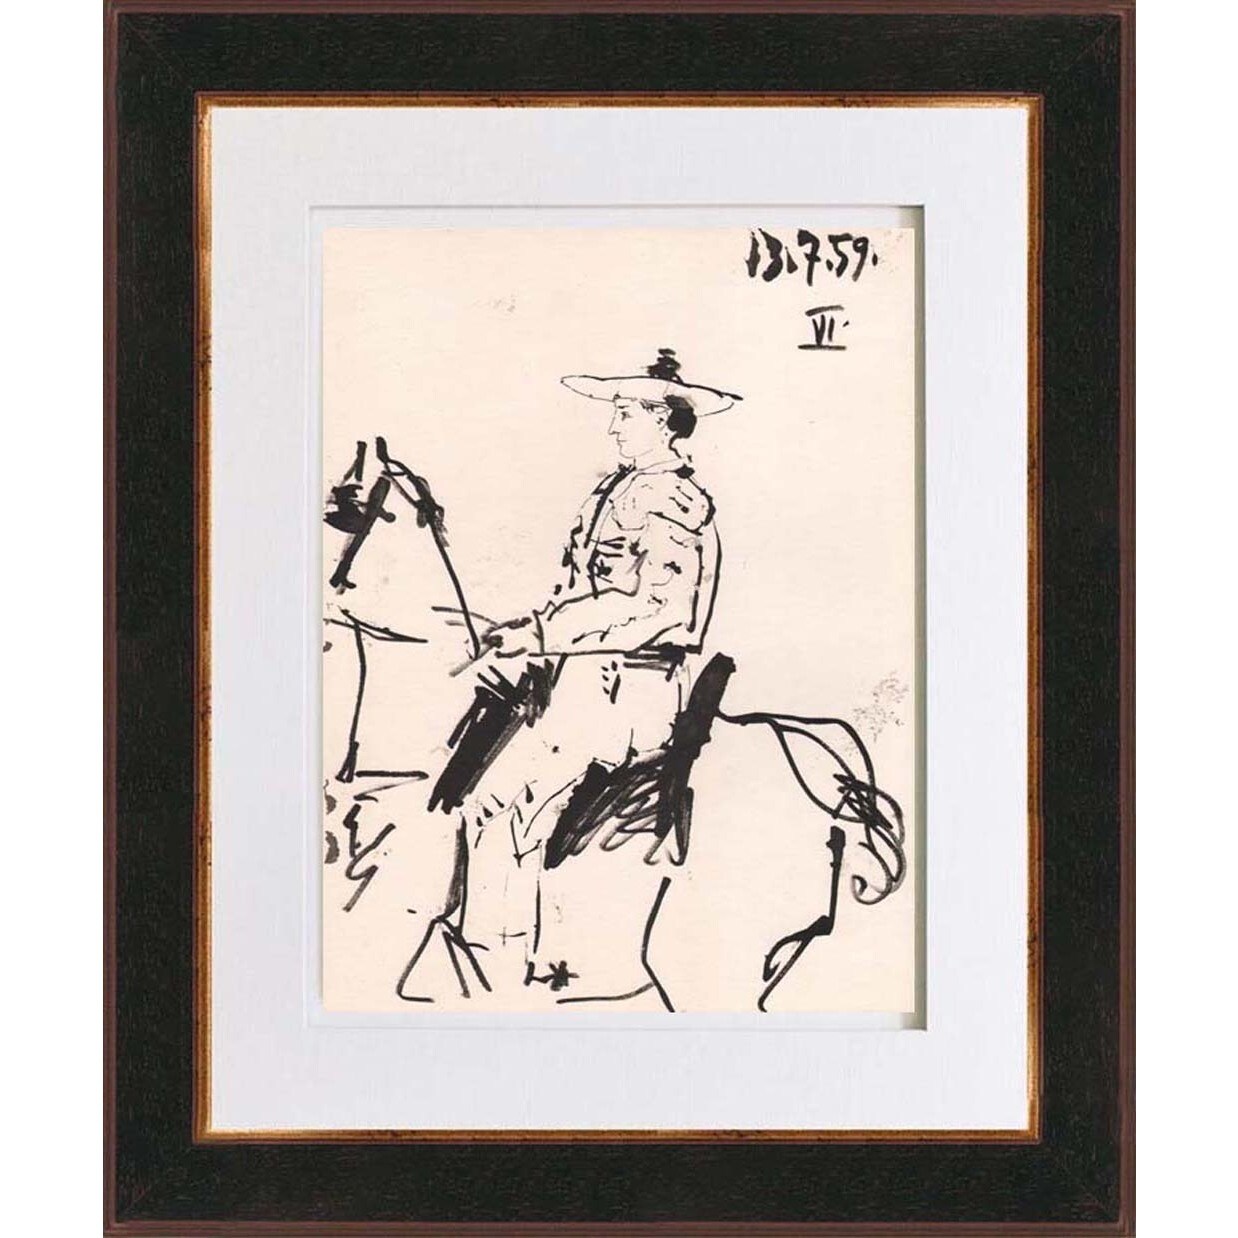 Pablo-Picasso-Number-6-Dated-13-7-59-Bichromie-Framed-954d586e-cb4e-476a-8b3c-d23fe0955a42.jpg